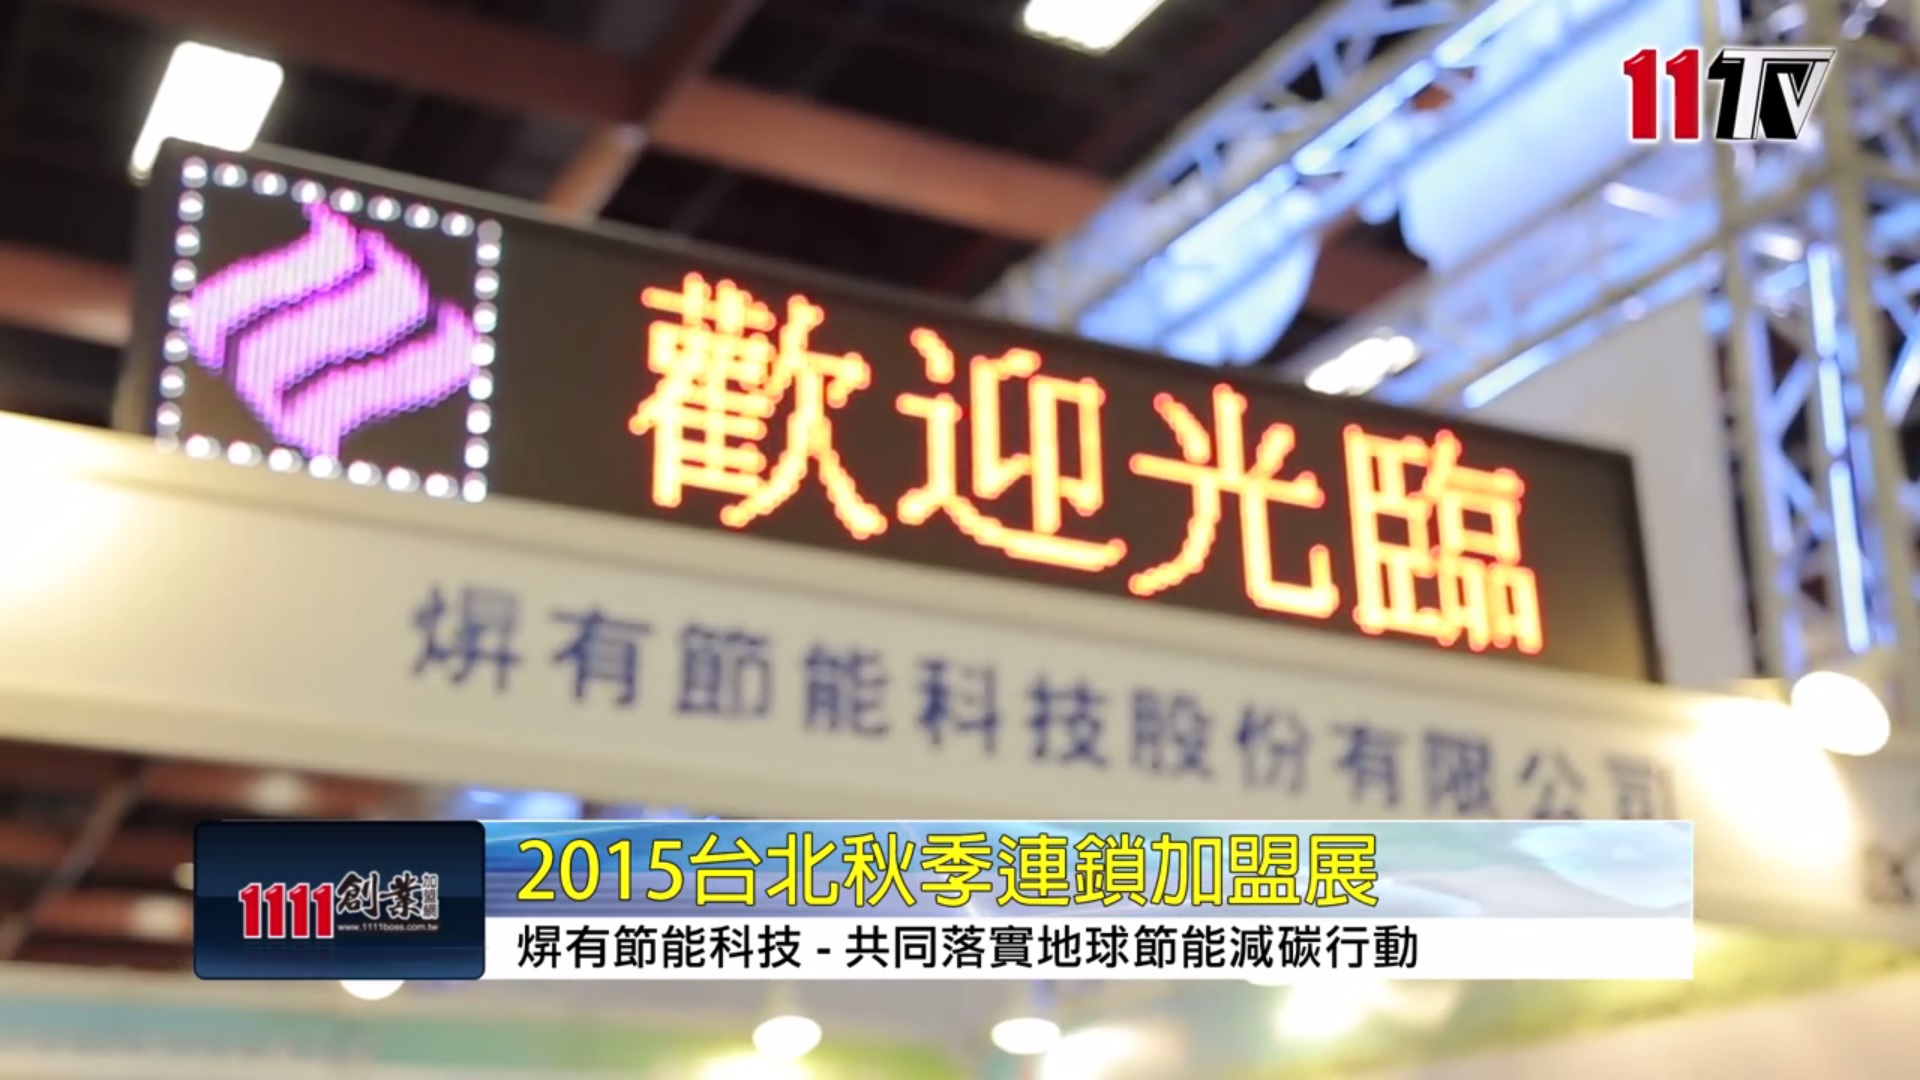 2015台北连锁加盟秋季展的圖片